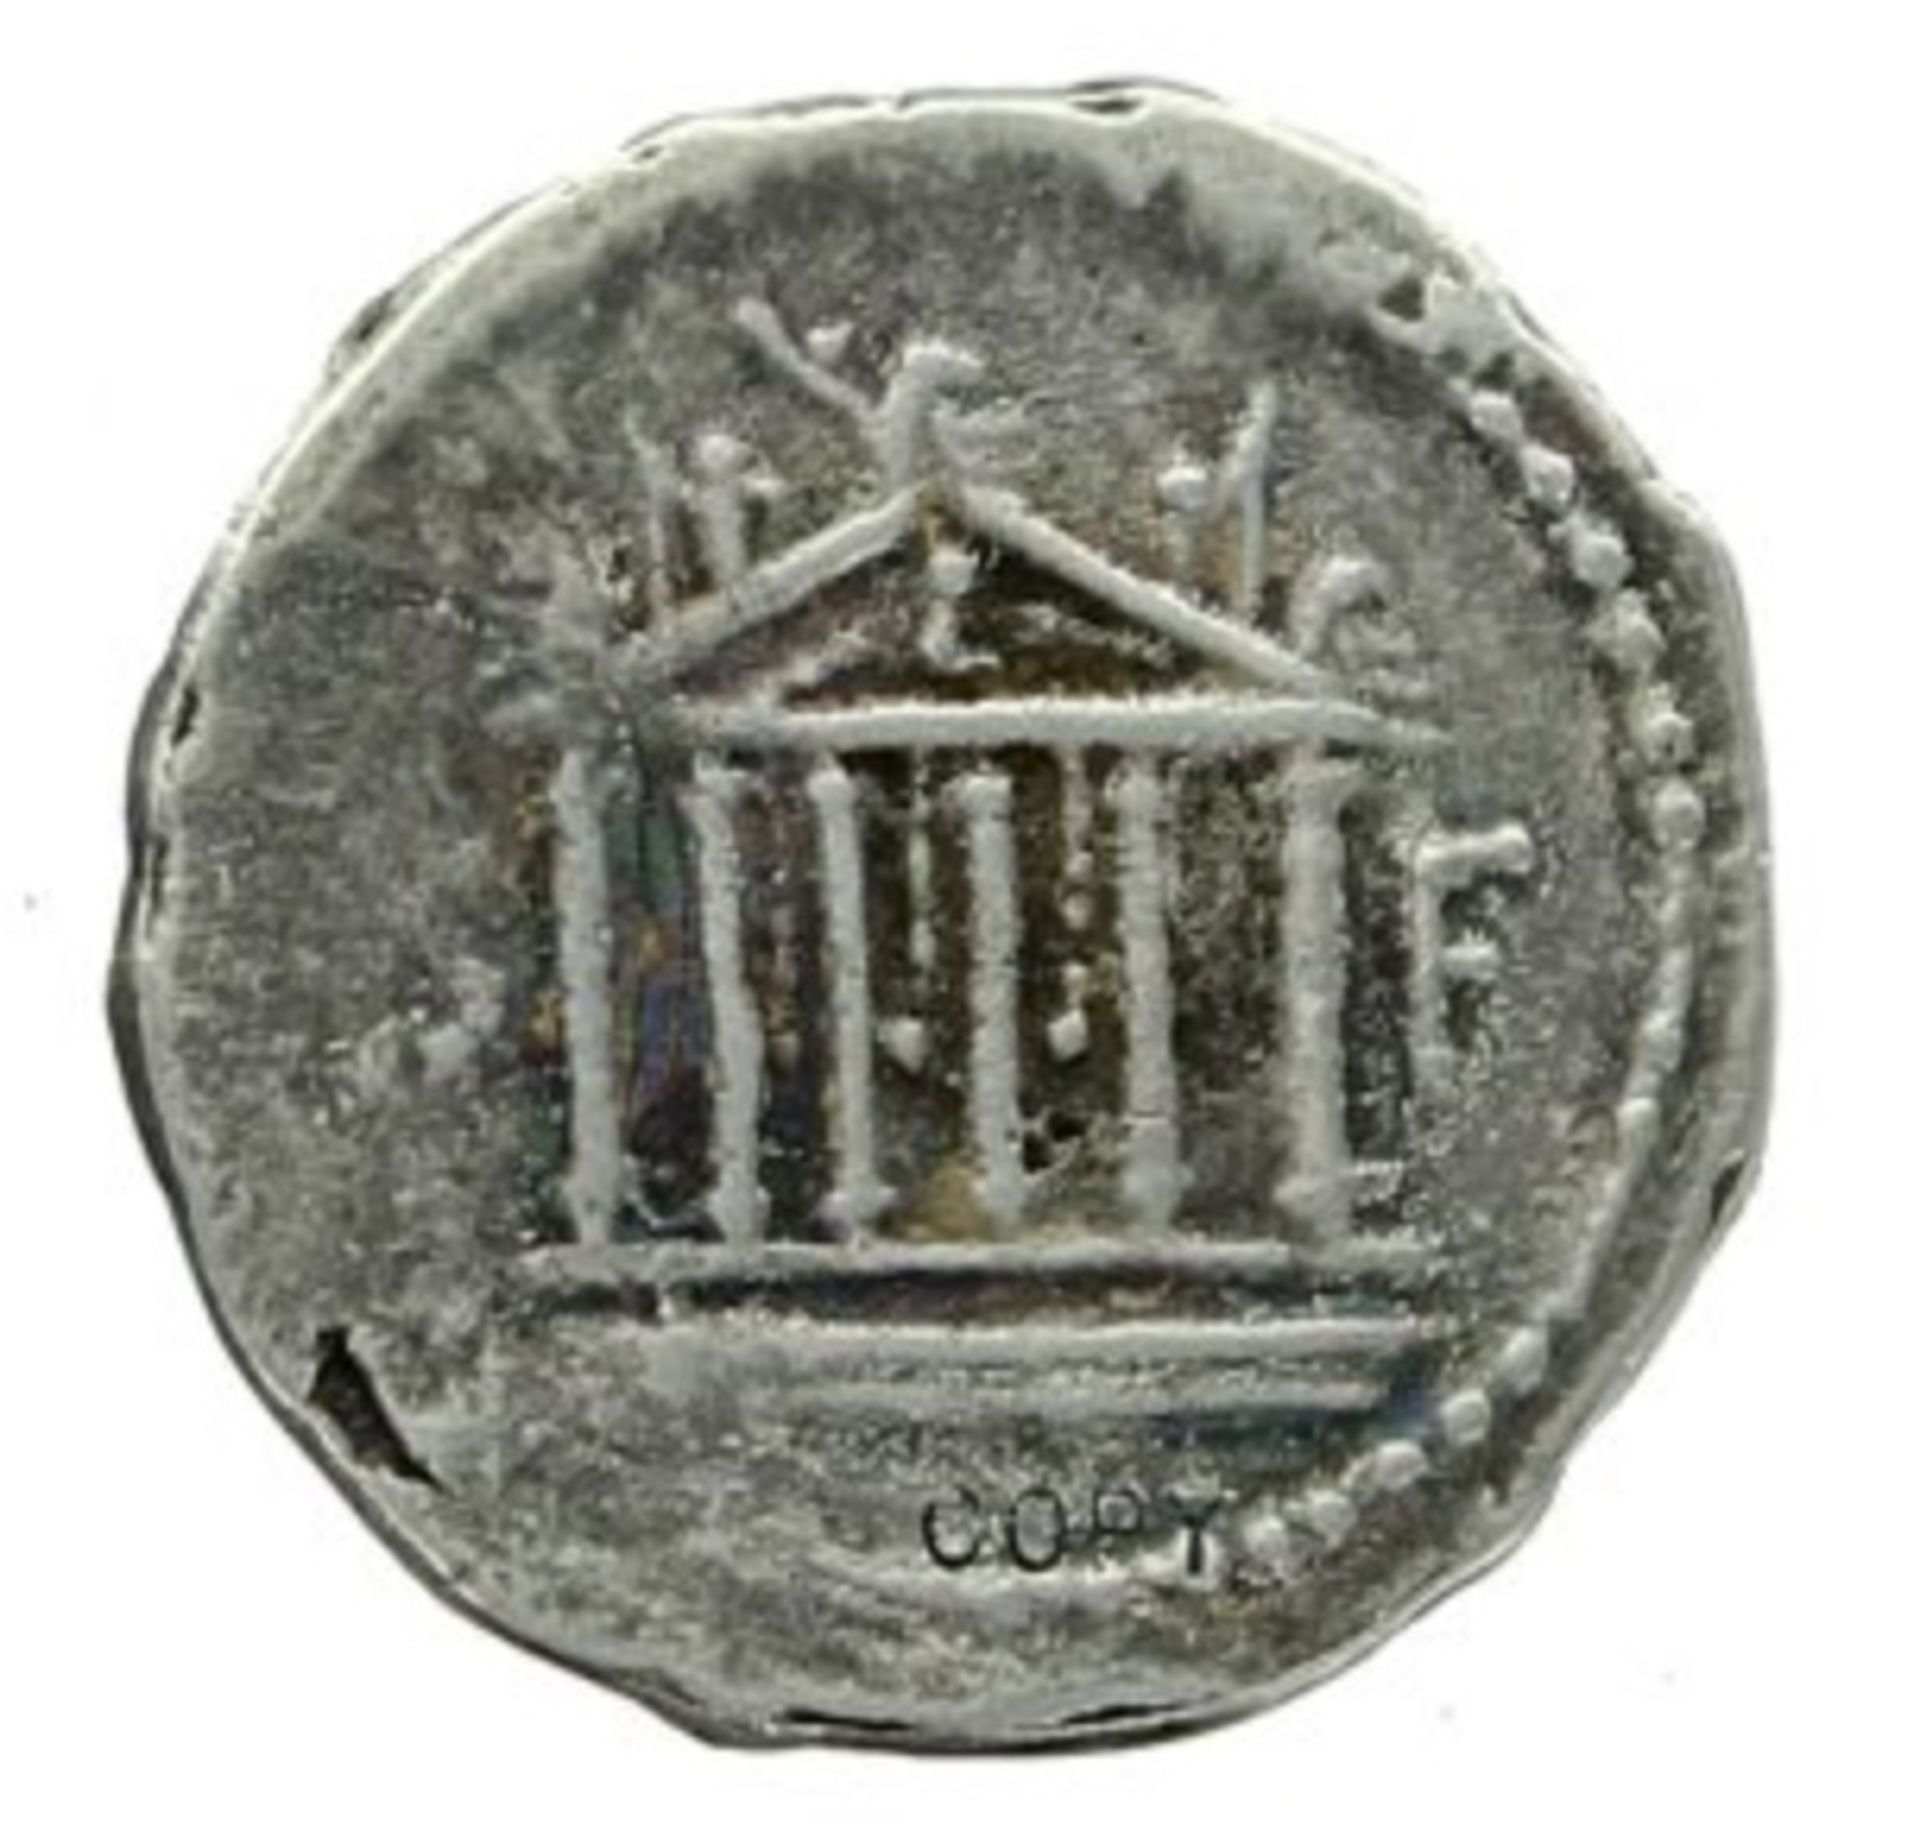 Petillius Capitolinus Roman Republic, Denarius 43 BC Coin - Image 2 of 2